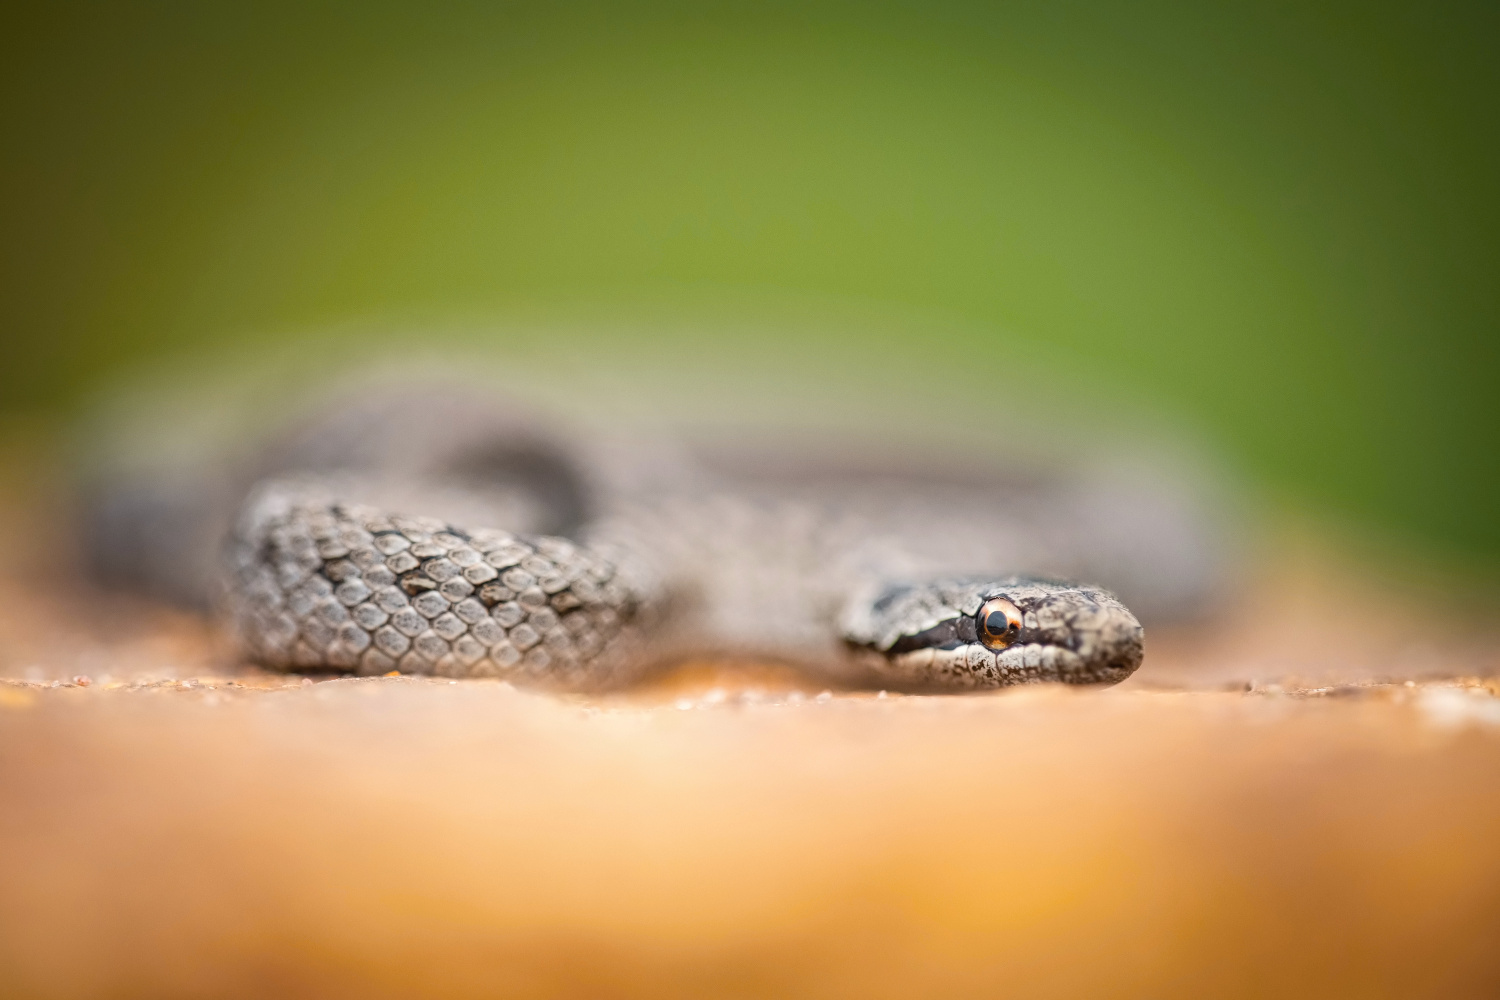 užovka obecná (Natrix natrix) Grass snake